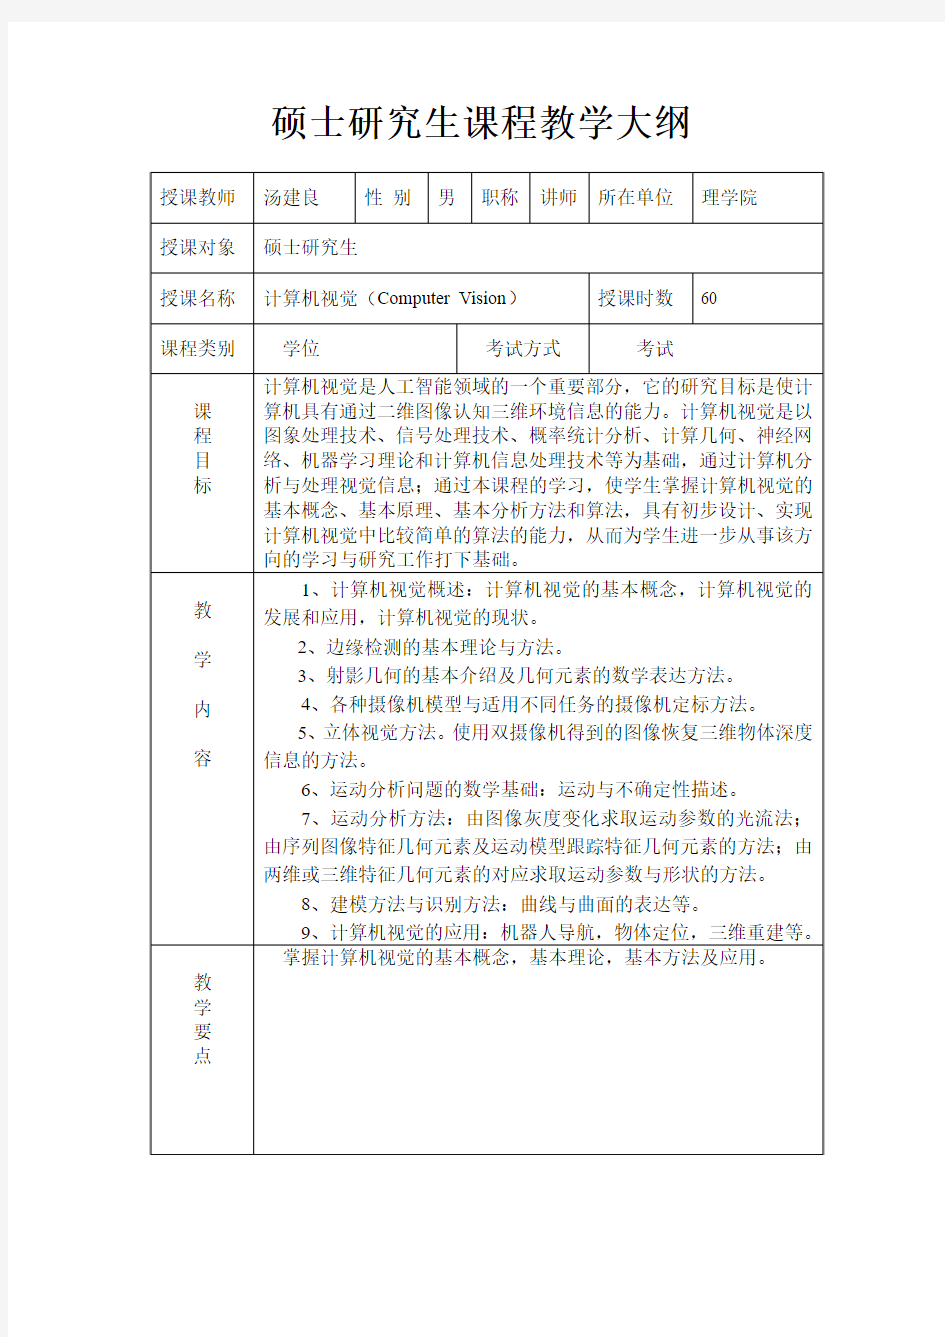 深圳大学 计算机视觉 硕士研究生课程教学大纲